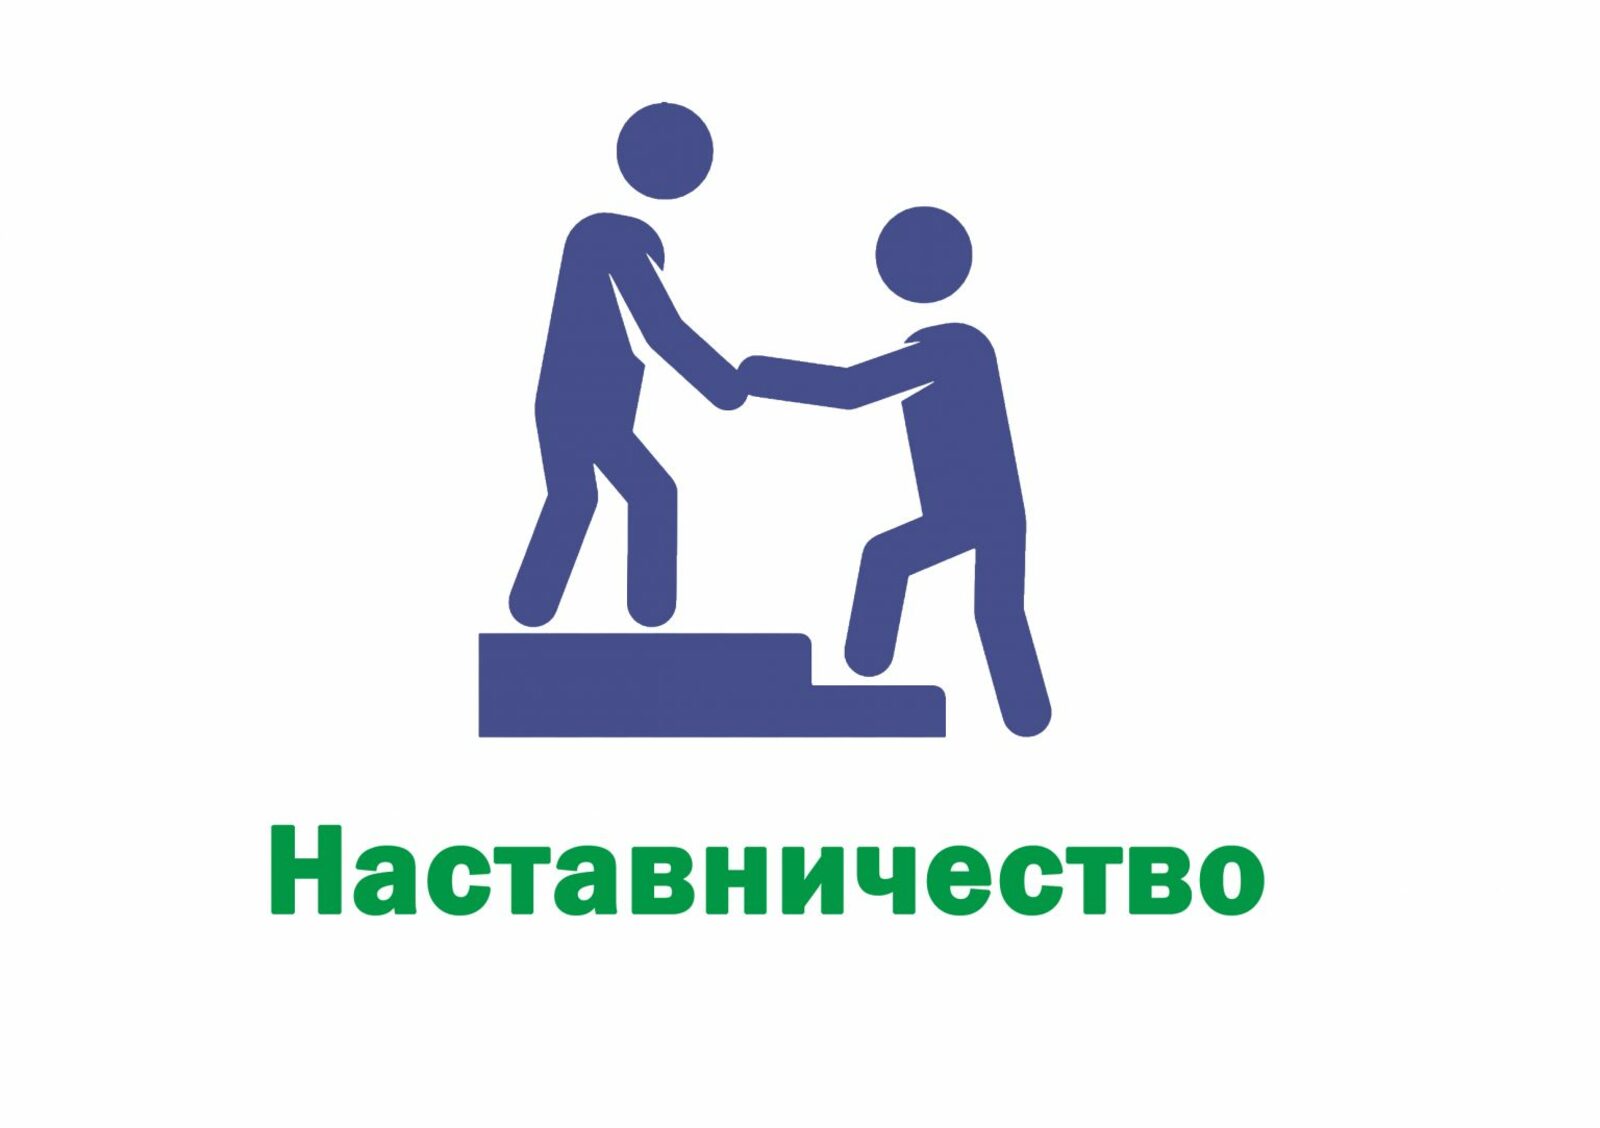 В Башкирии стартовал прием заявок на участие в конкурсе наставничества